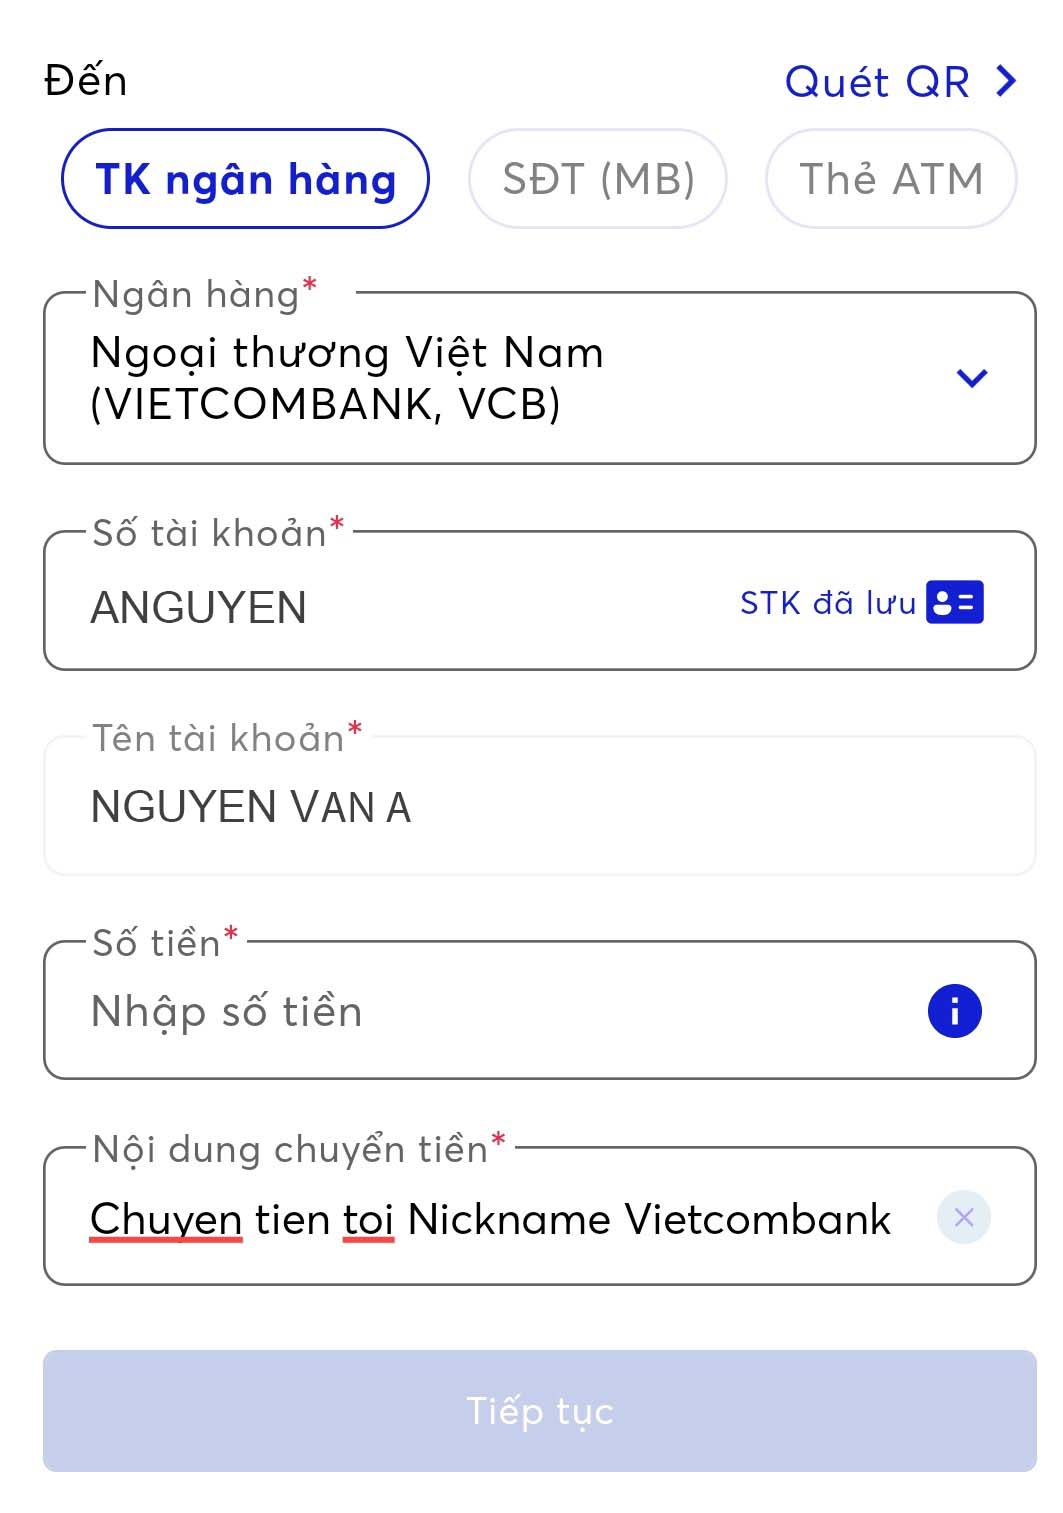 Quý khách vui lòng xem hình ảnh liên quan đến chuyển khoản thành công với ngân hàng Vietcombank để cảm nhận sự thuận tiện và nhanh chóng khi thực hiện giao dịch tại đây.